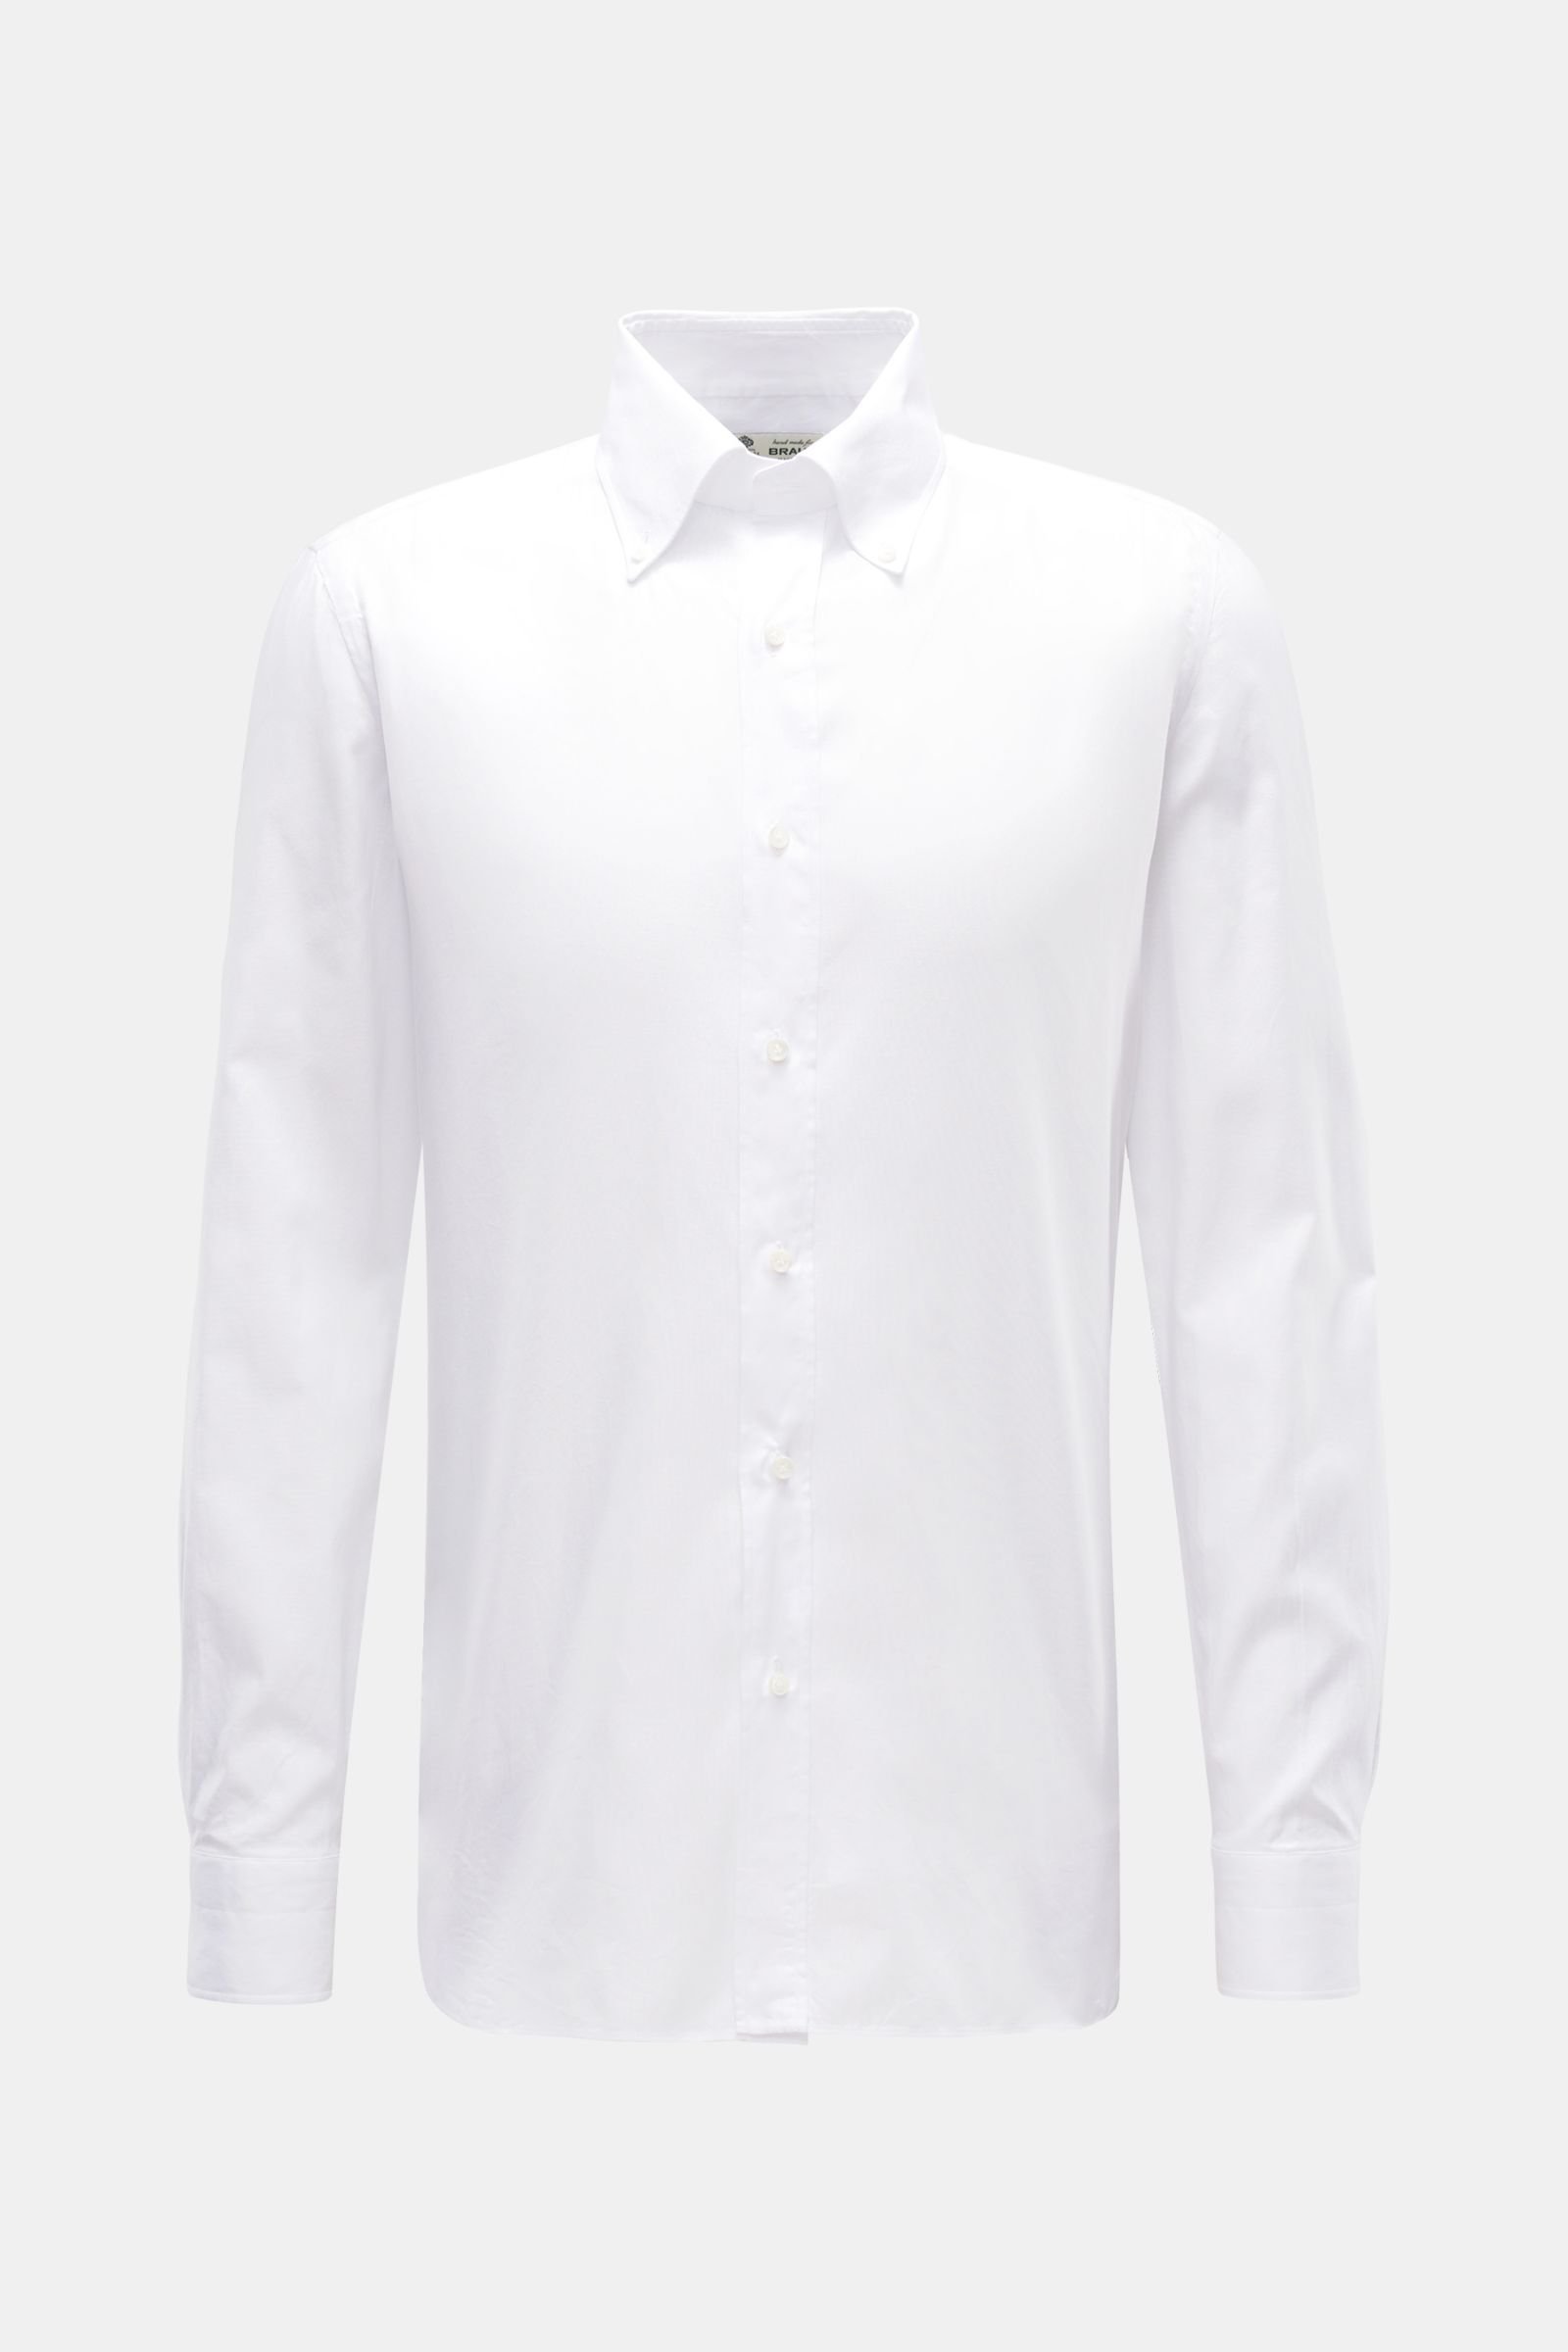 BORRELLI casual shirt 'Gable' button-down collar white | BRAUN Hamburg